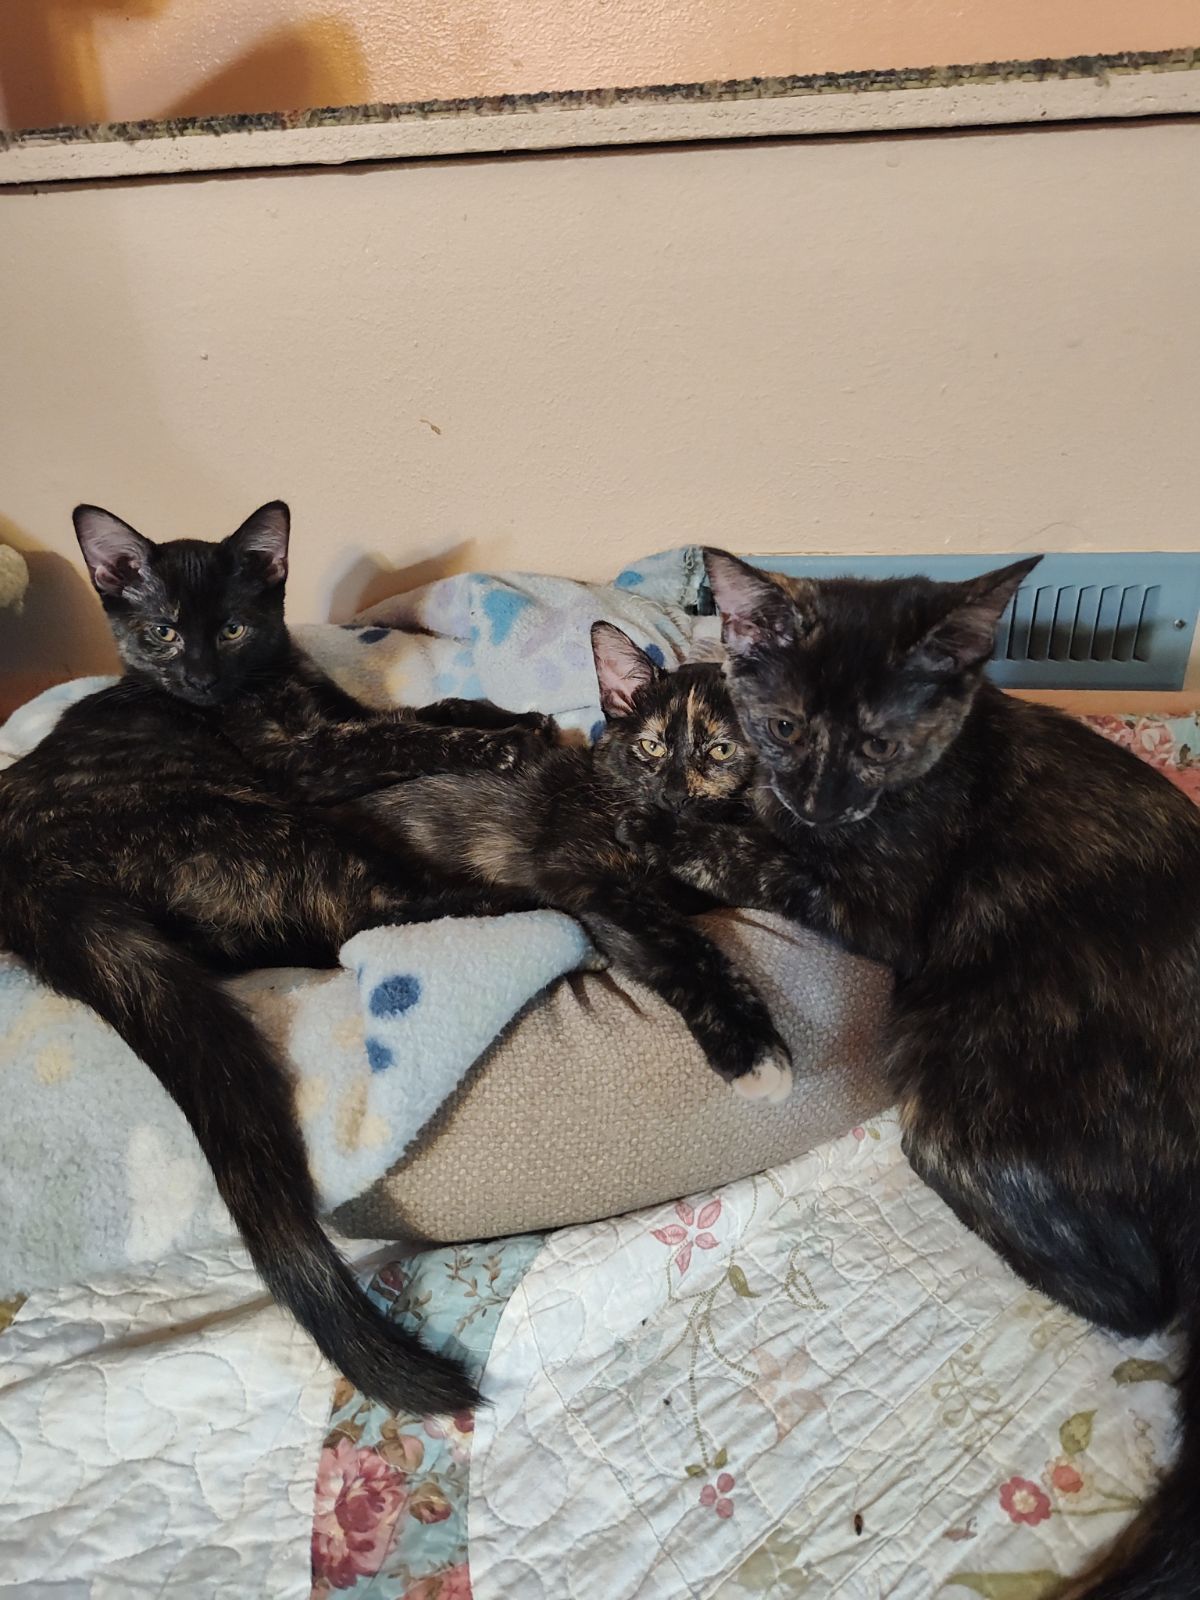 Copies of 3 tortoiseshell cats that we call Zita Lita and Bonita